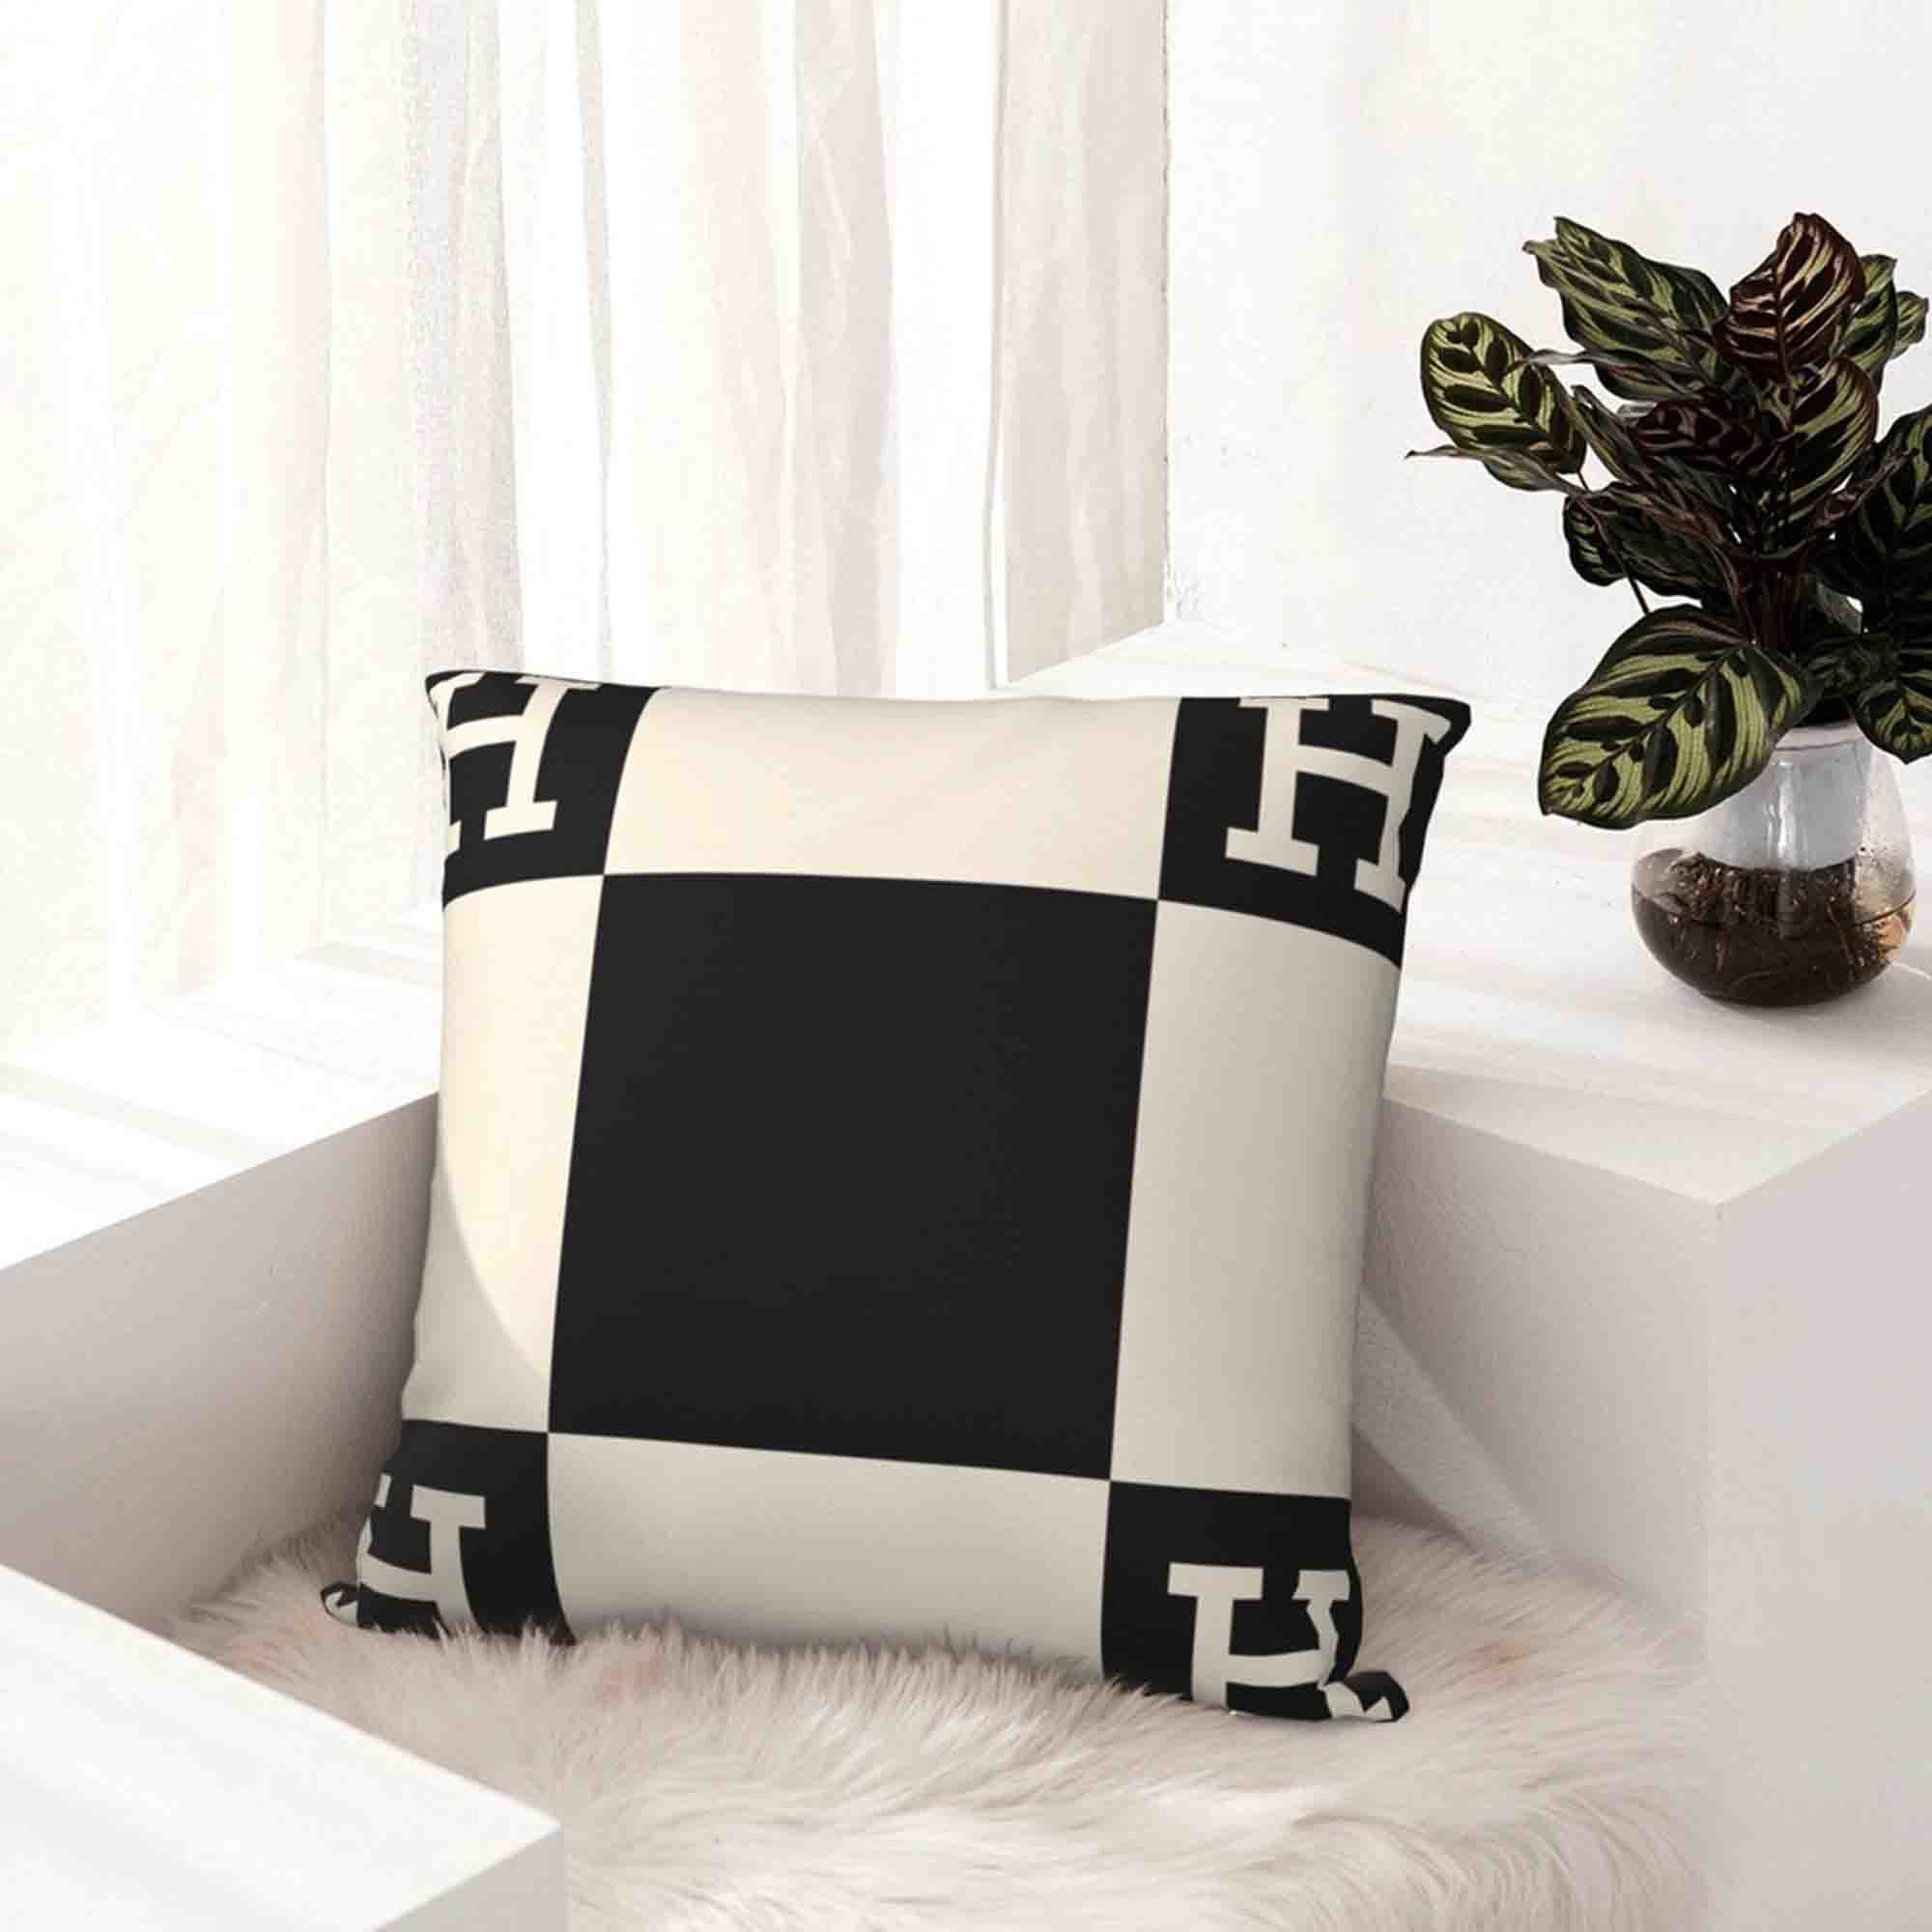 Louis Vuitton White Fashion Logo Luxury Brand Blanket Fleece Home Decor